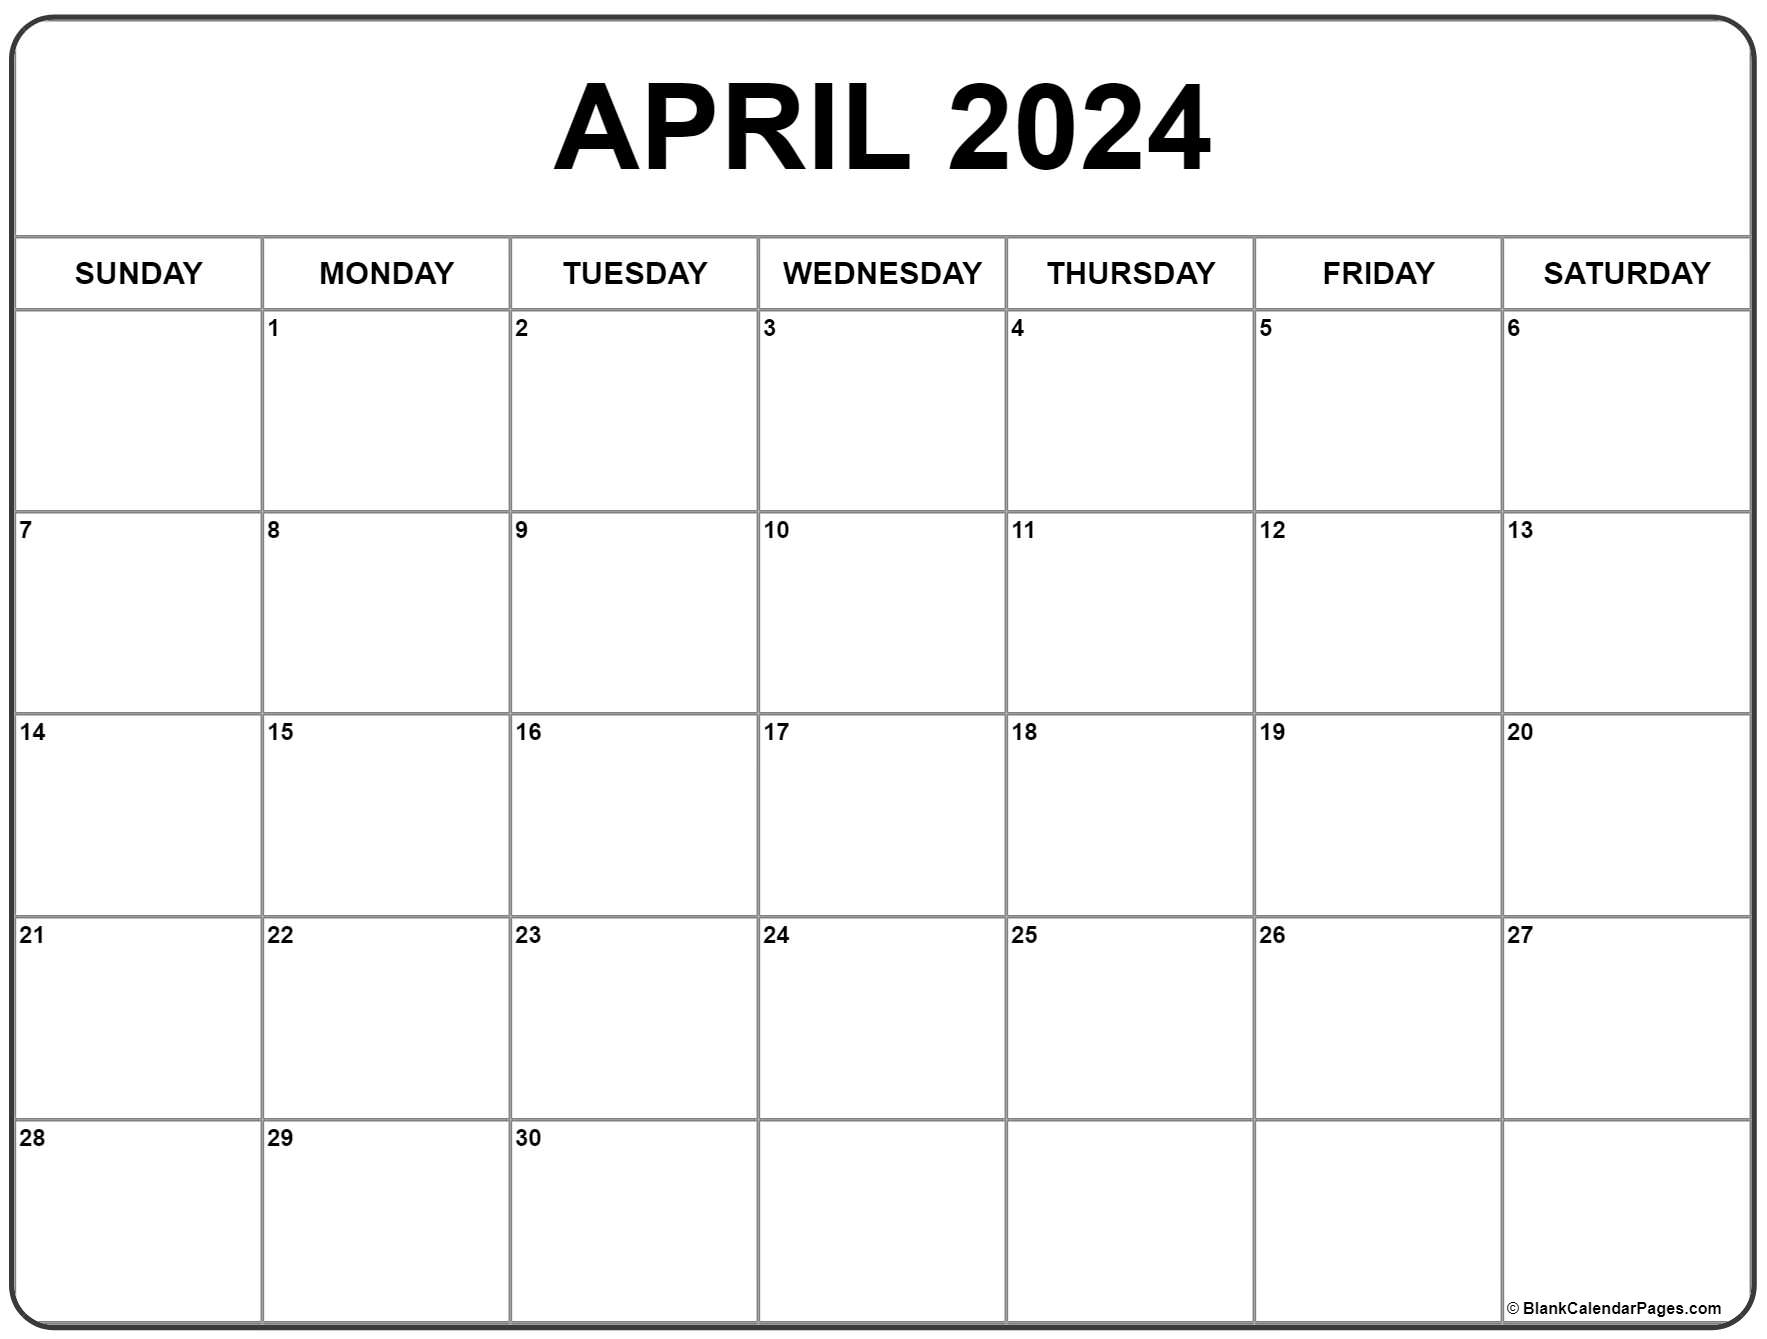 April 2024 Calendar | Free Printable Calendar in Free Printable Blank Calendar April 2024